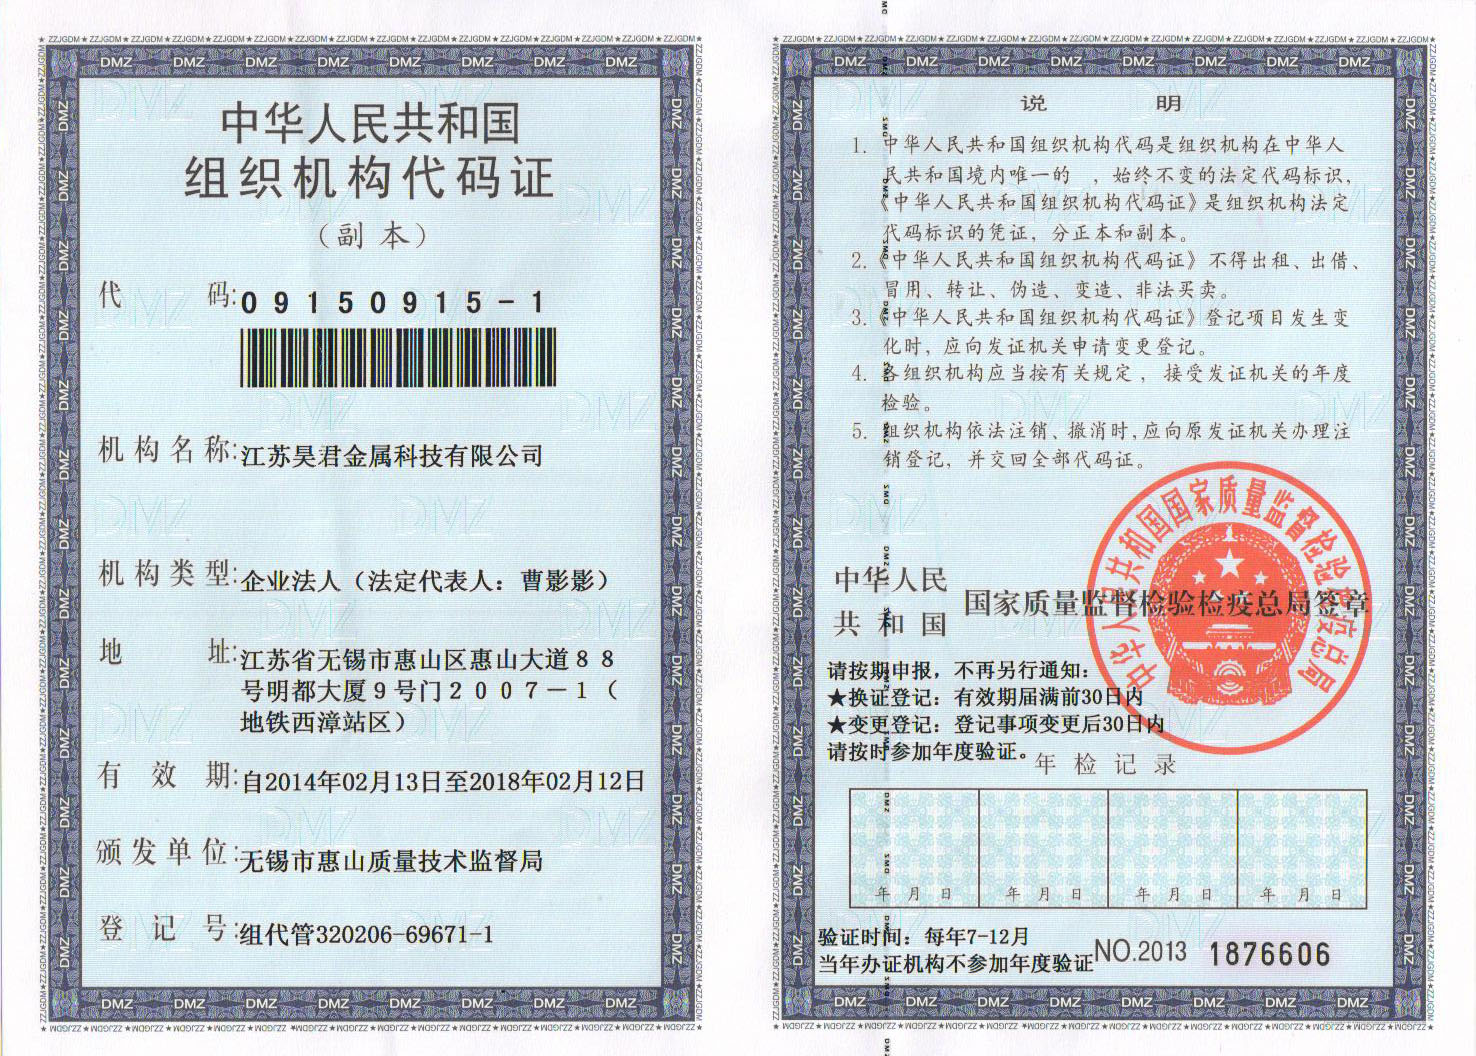 江苏昊君金属科技有限公司组织机构代码证